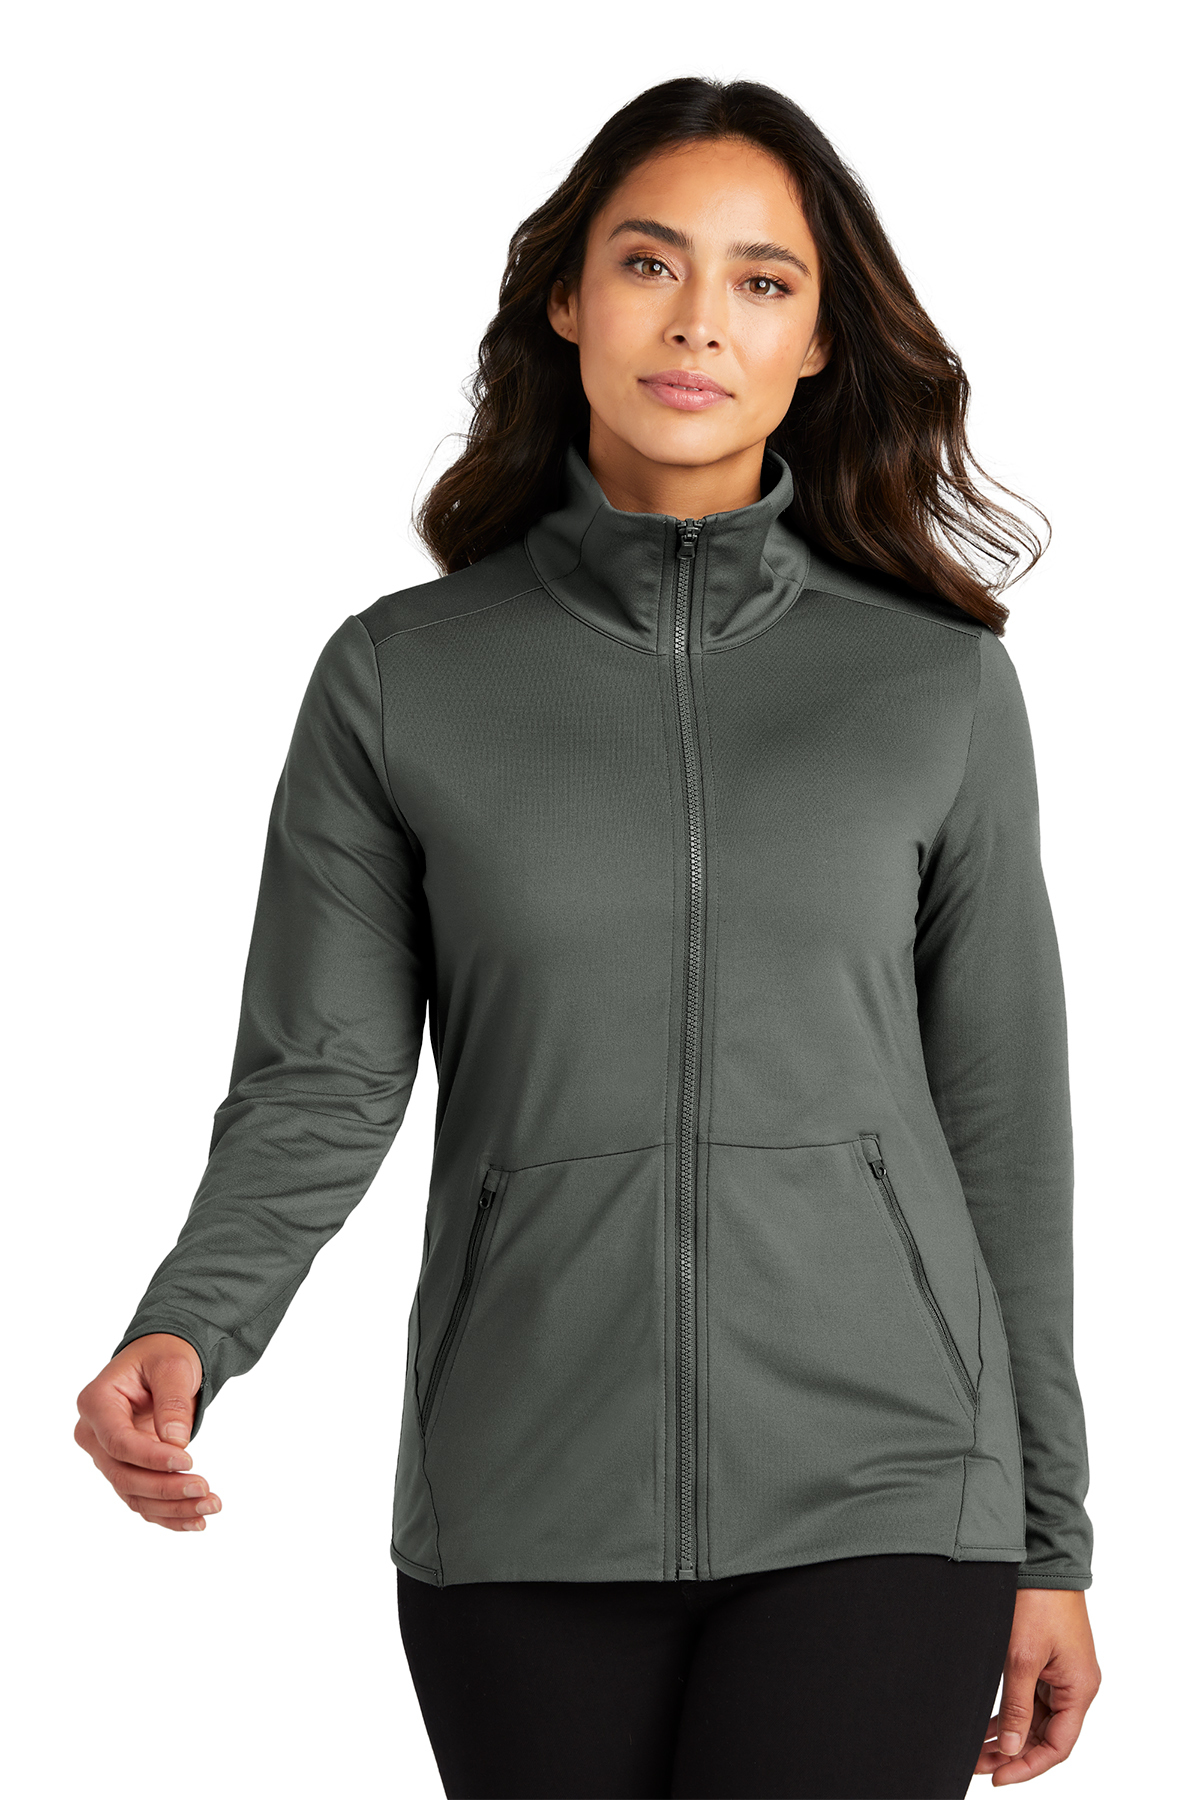 Port Authority Ladies Accord Stretch Fleece Full-Zip | Product | SanMar